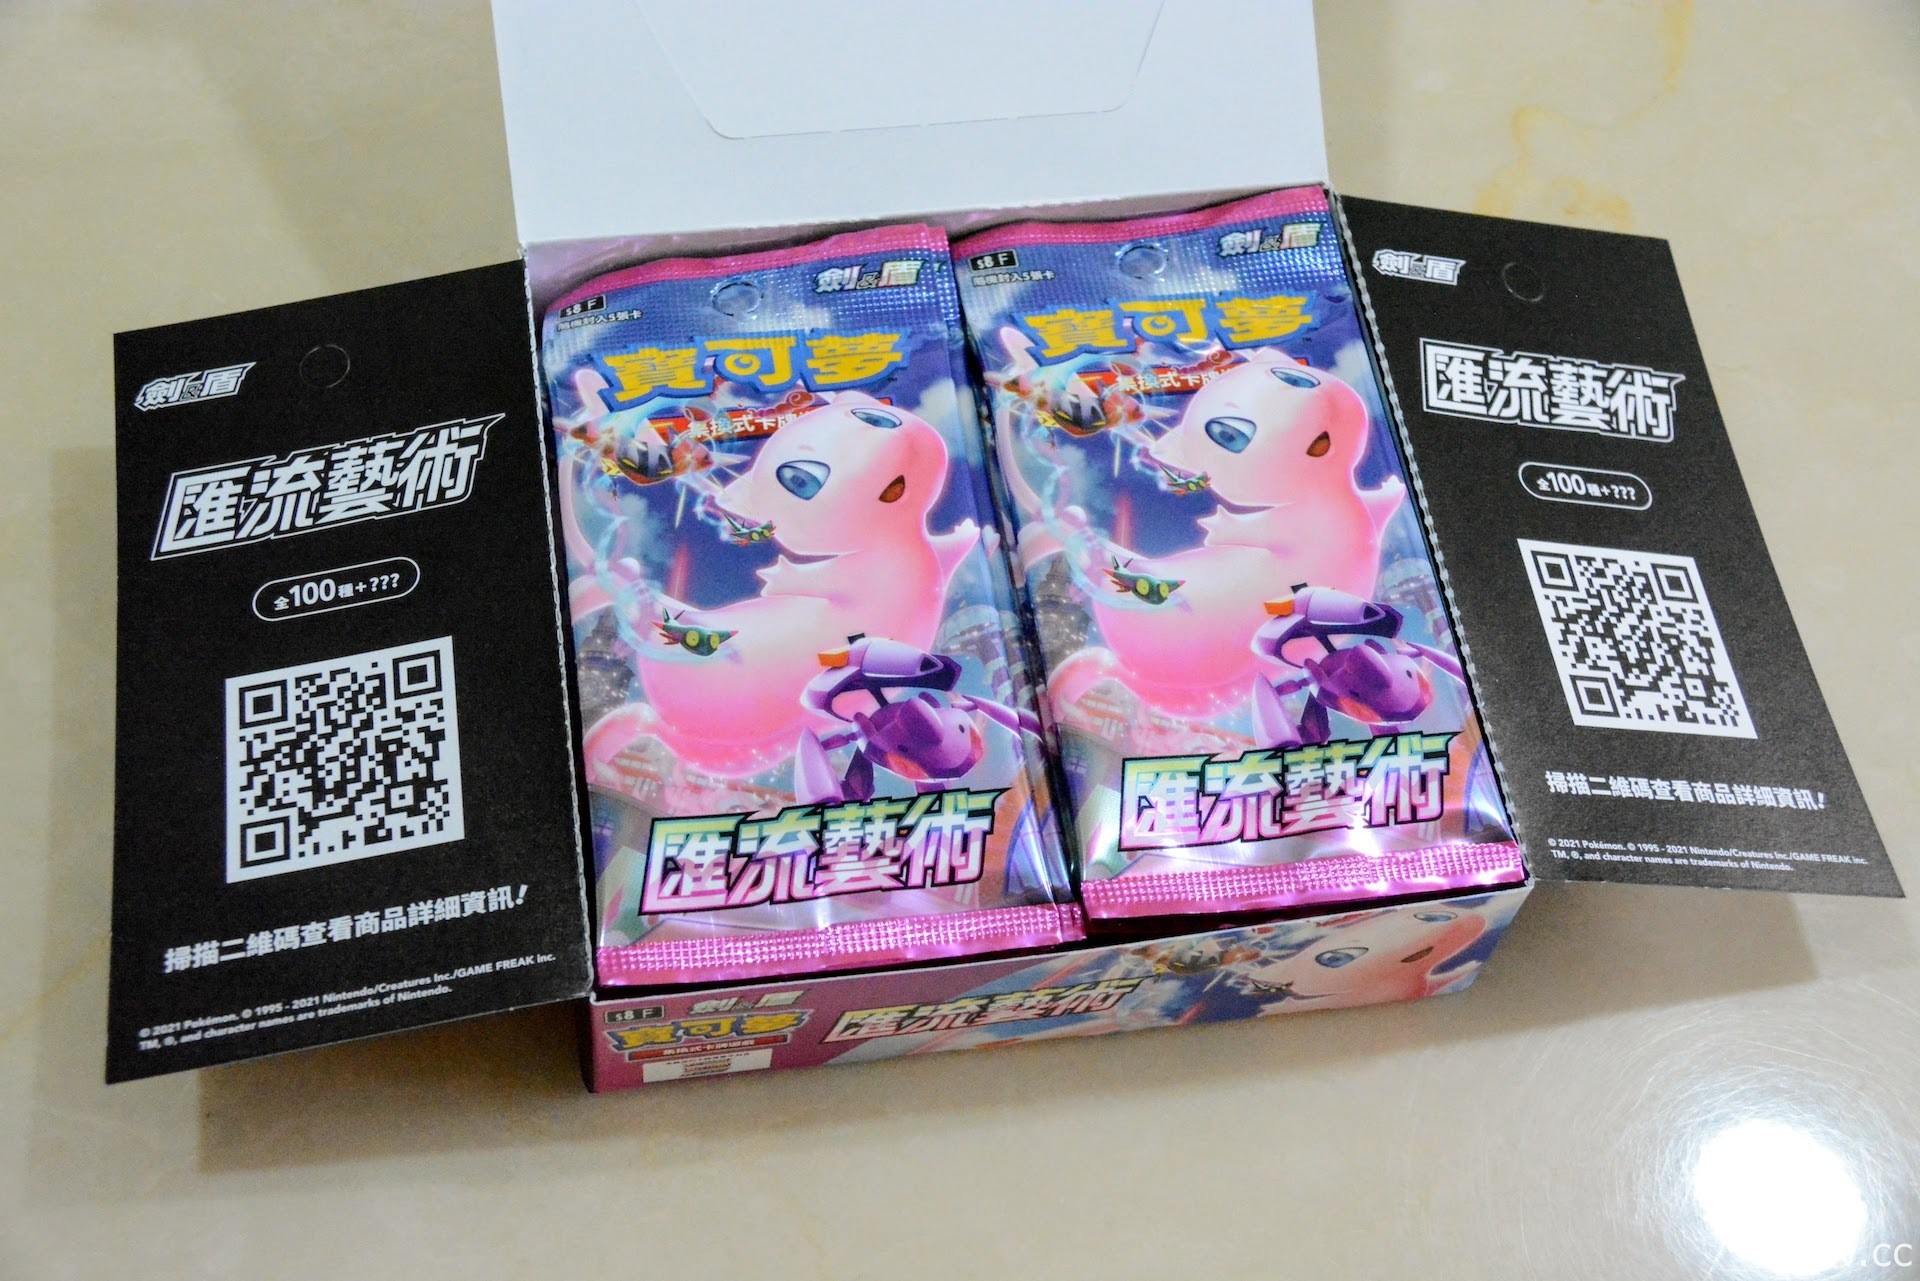 【開箱】《寶可夢集換式卡牌遊戲》「匯流藝術」發售 新對戰風格「FUSION」登場